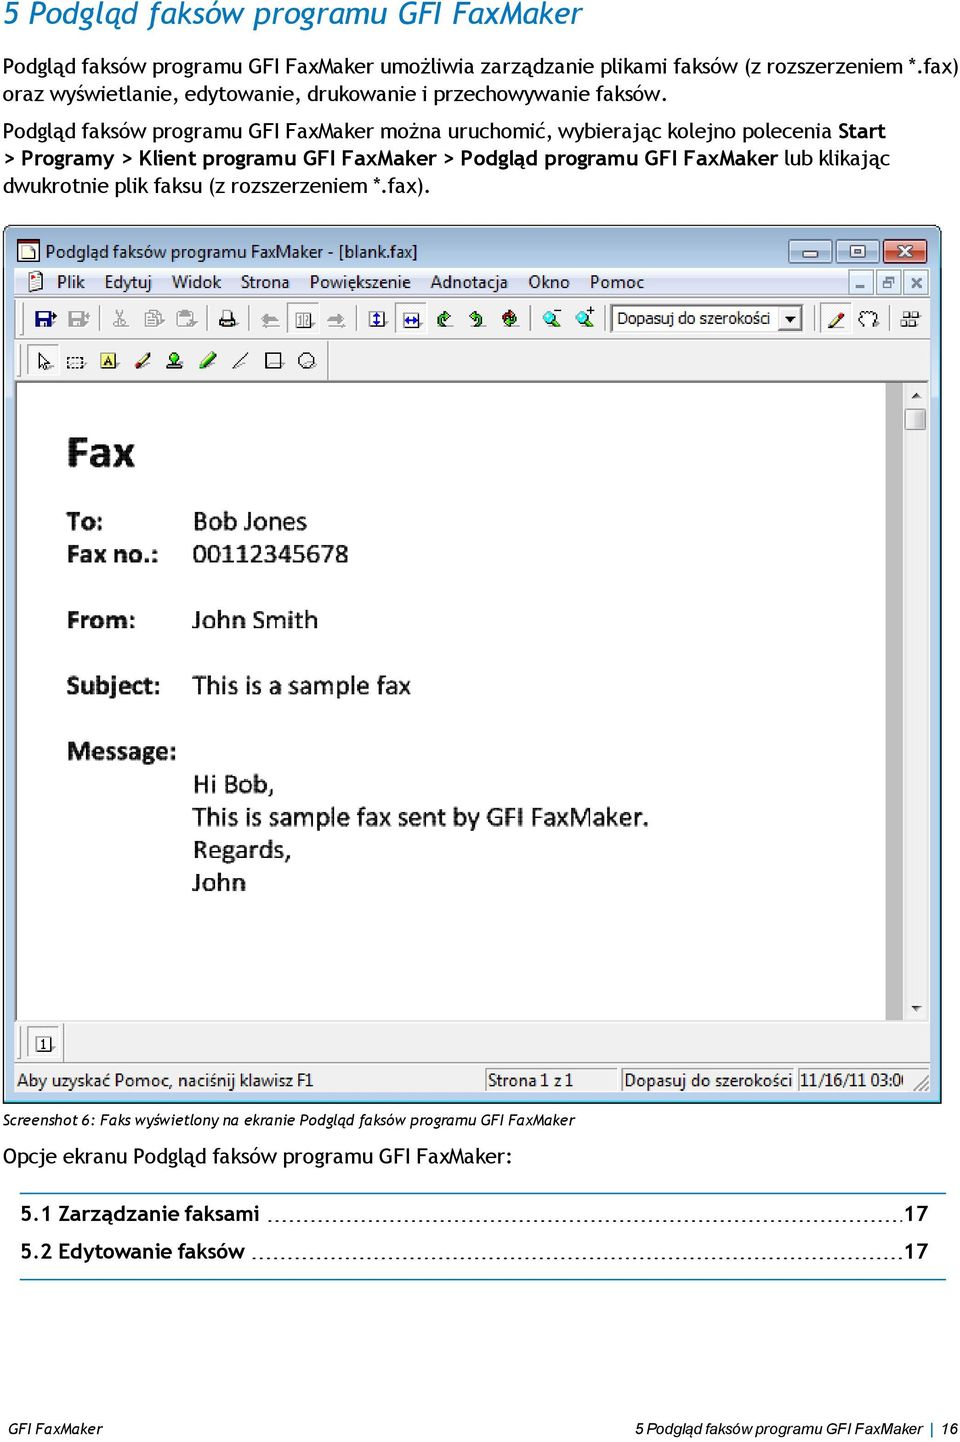 Podgląd faksów programu GFI FaxMaker można uruchomić, wybierając kolejno polecenia Start > Programy > Klient programu GFI FaxMaker > Podgląd programu GFI FaxMaker